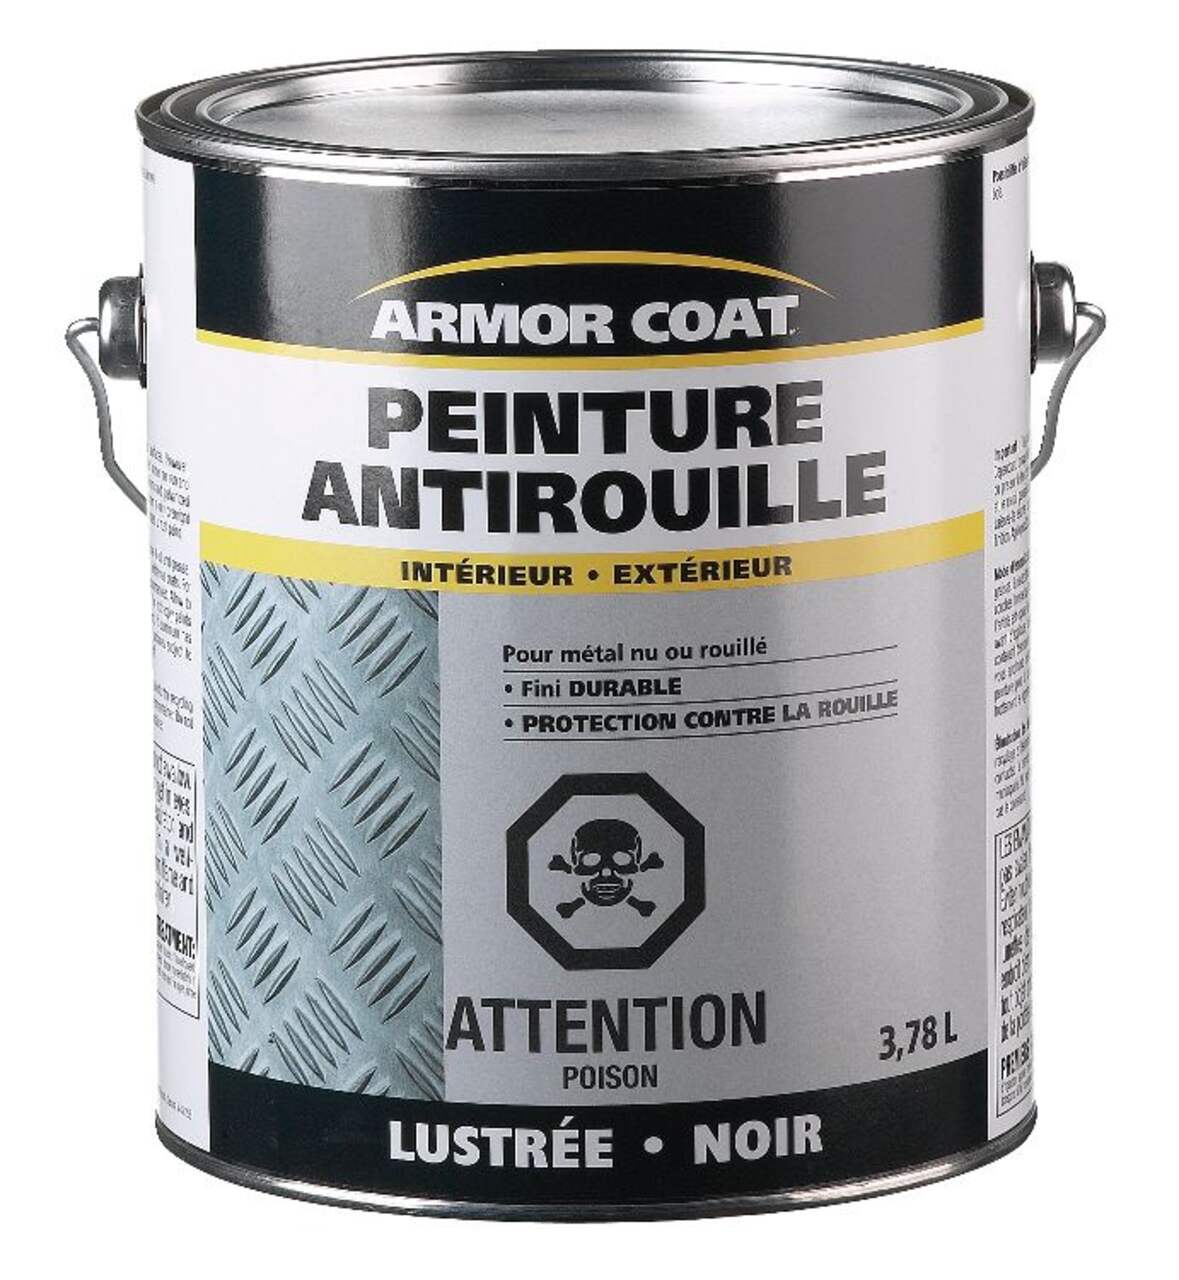 Peinture antirouille pour l'intérieur et l'extérieur Armor Coat, fini  durable avec protection, 3,78 L/1 gallon